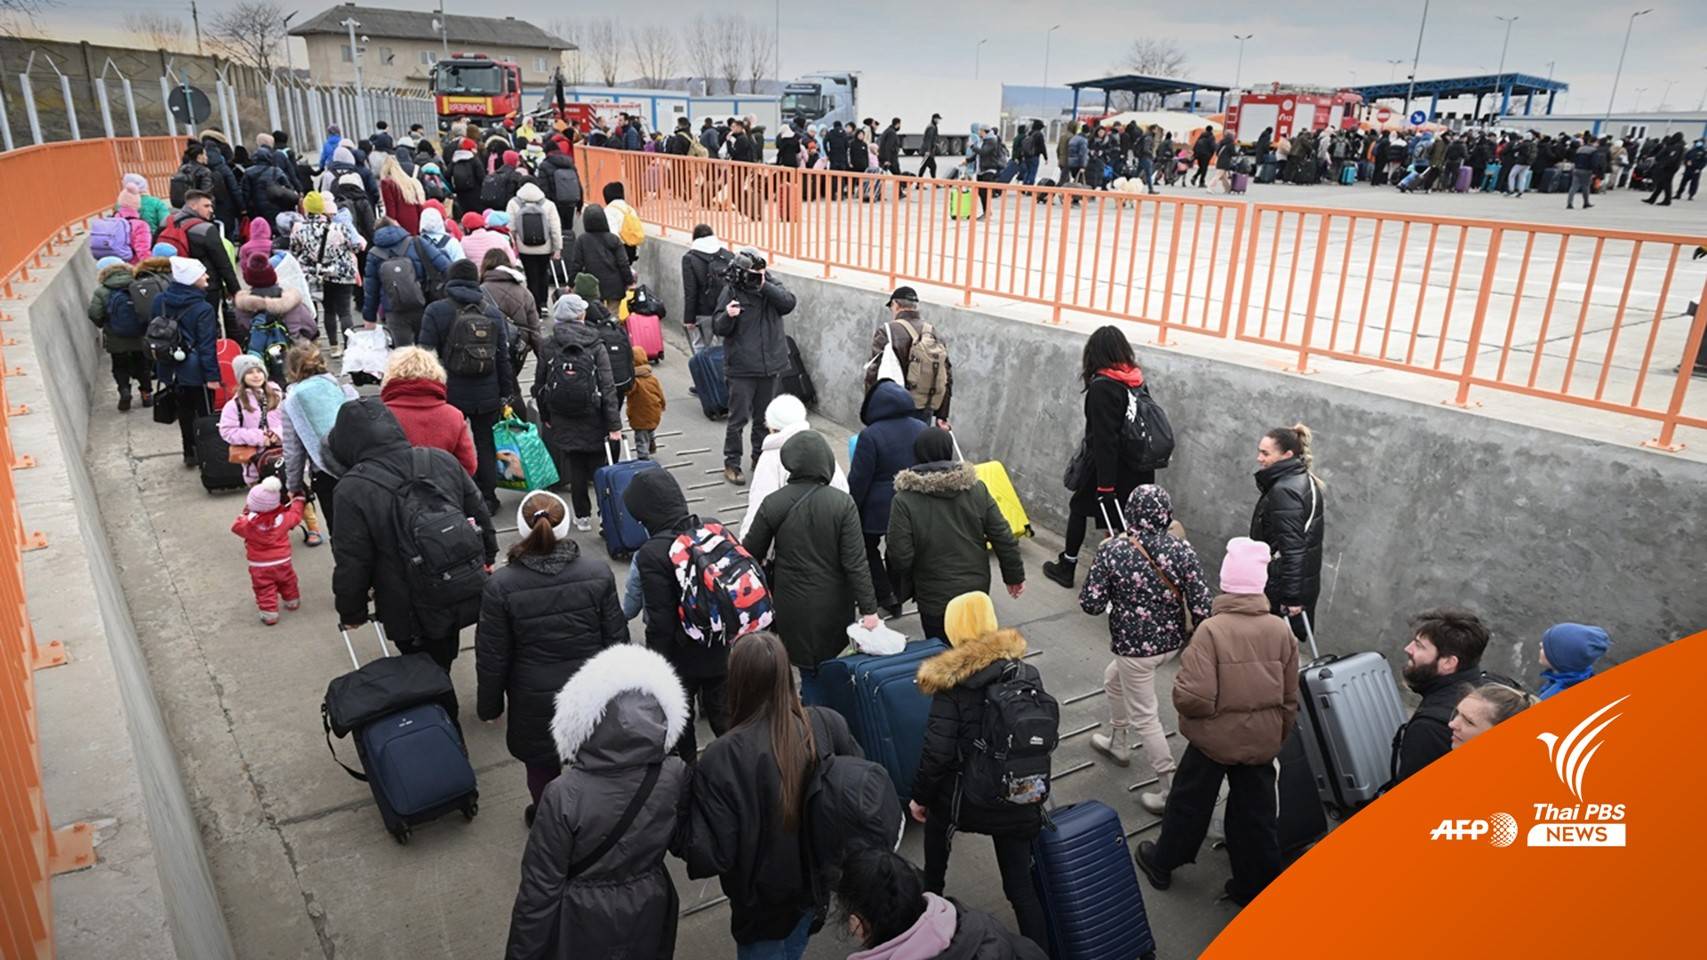 "ยูเอ็น" คาดชาวยูเครนกว่า 500,000 คนหนีภัยออกนอกประเทศ